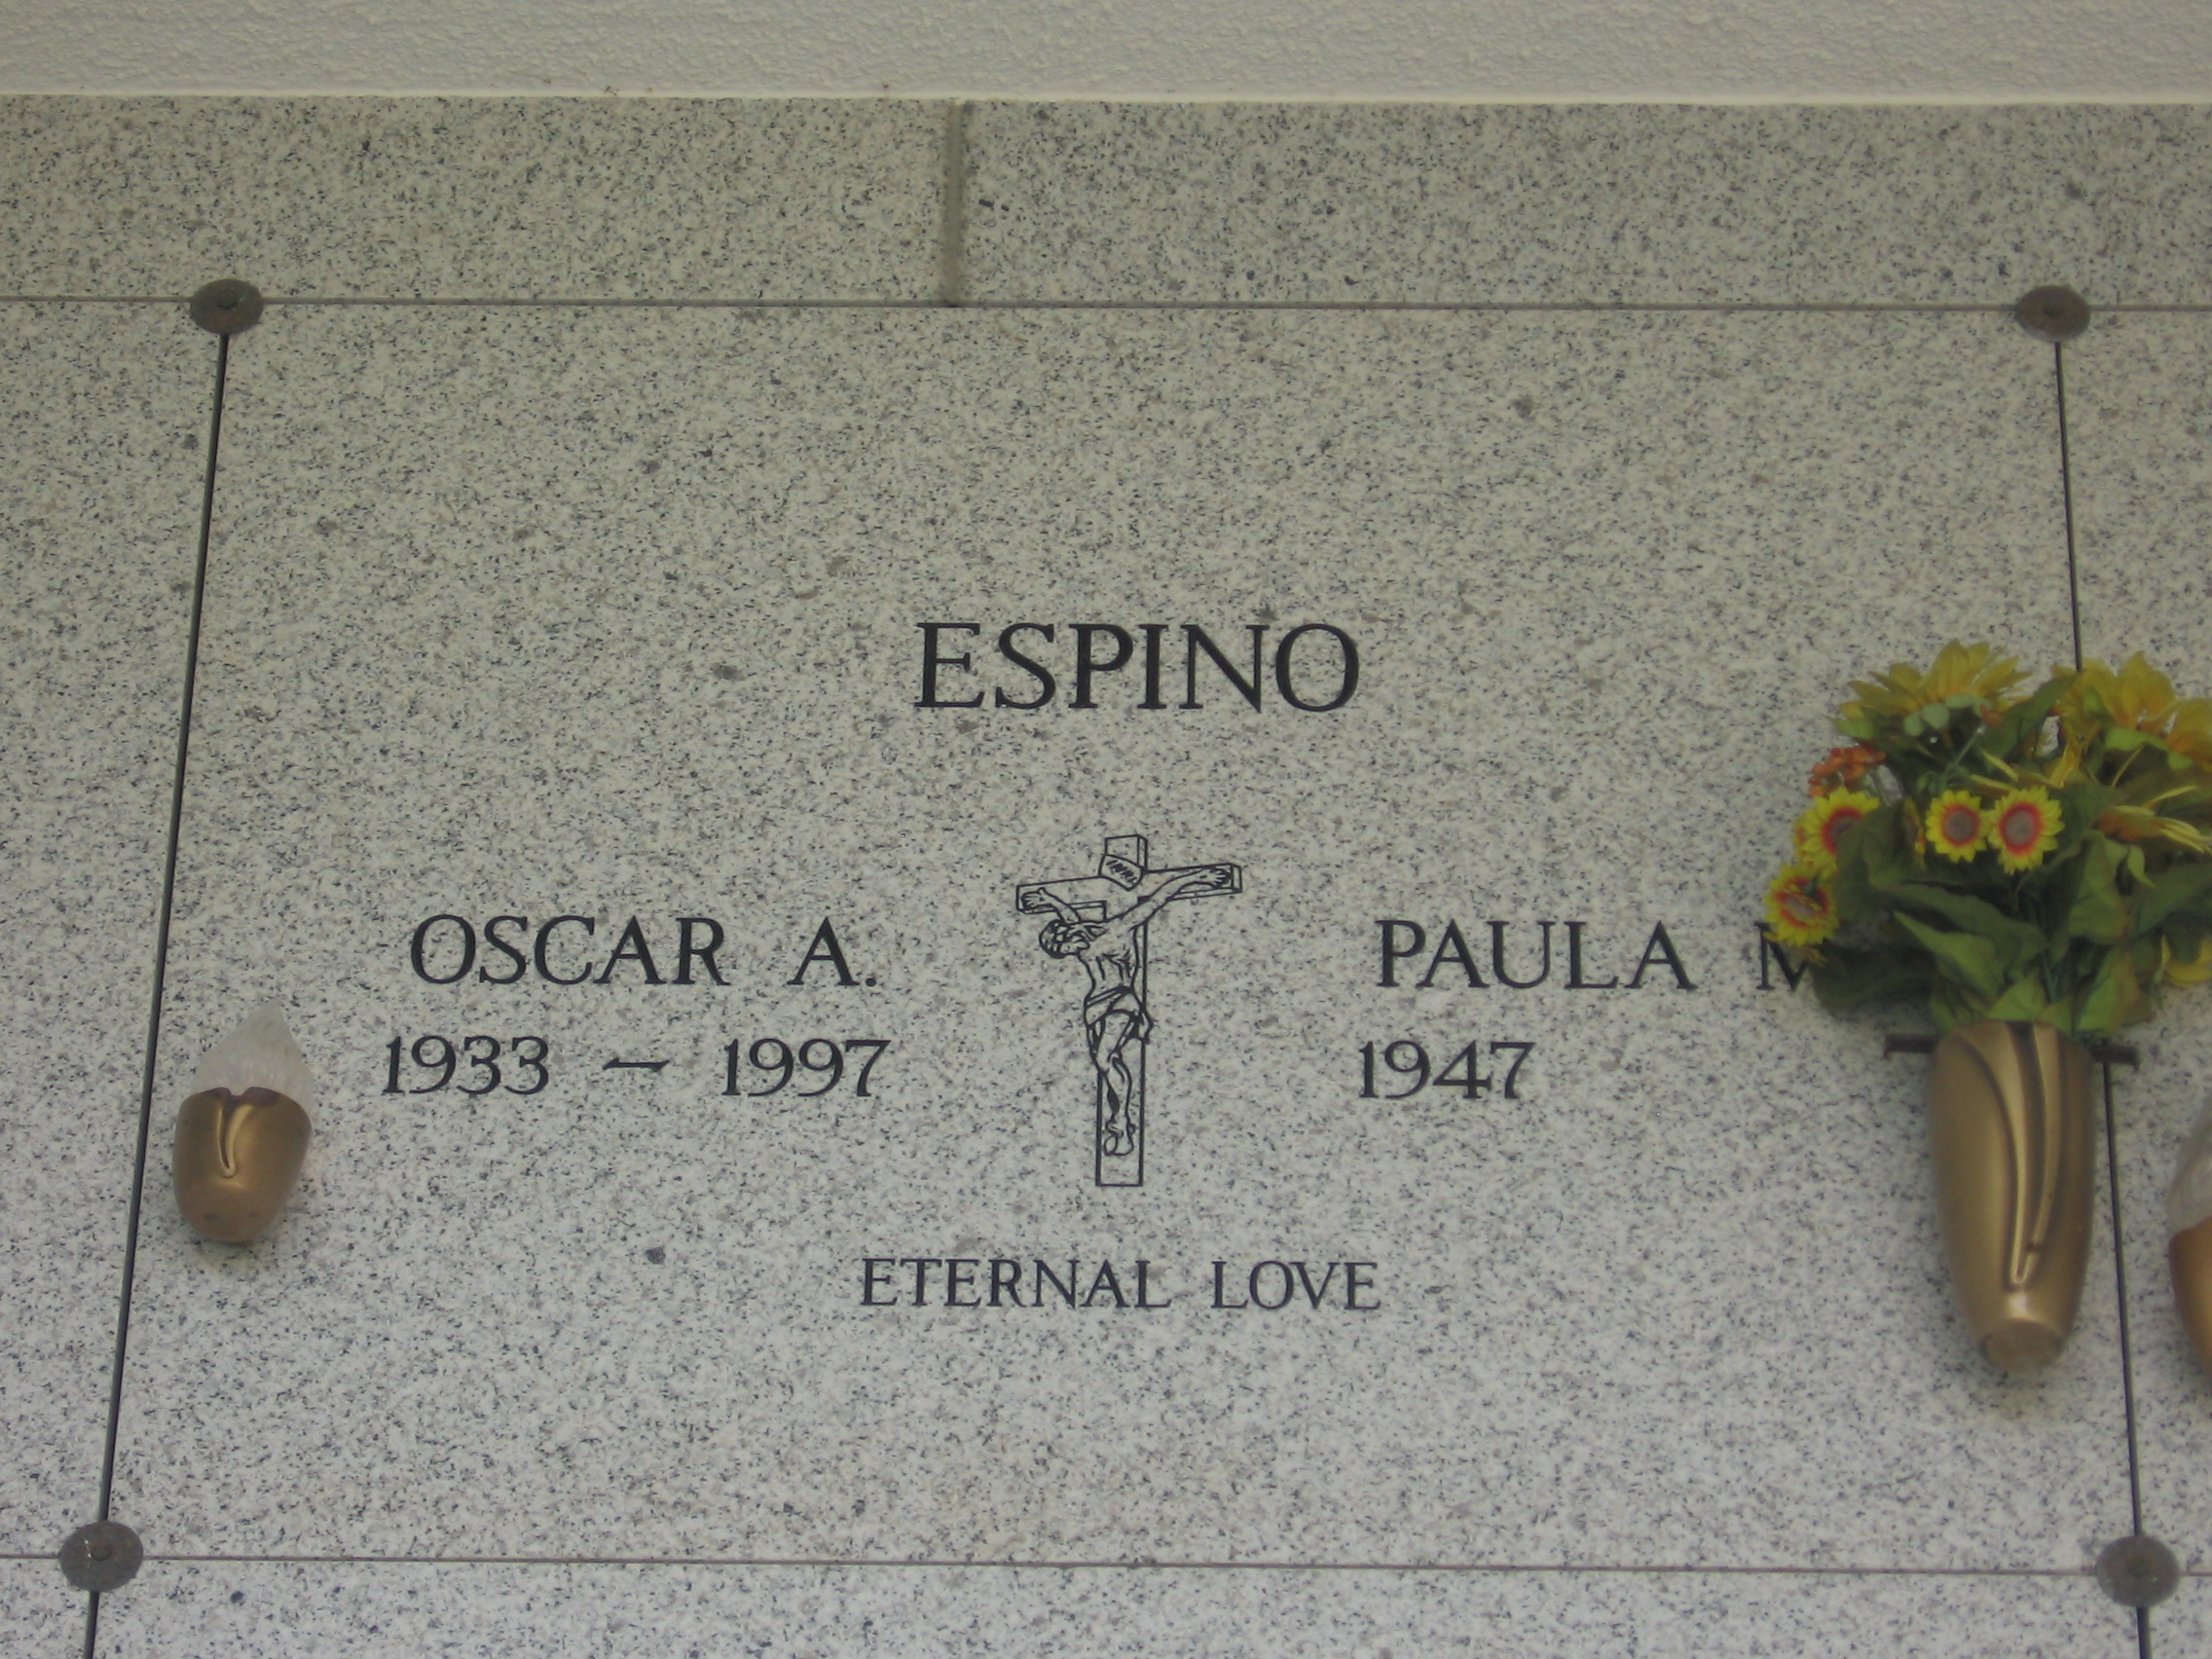 Oscar A Espino